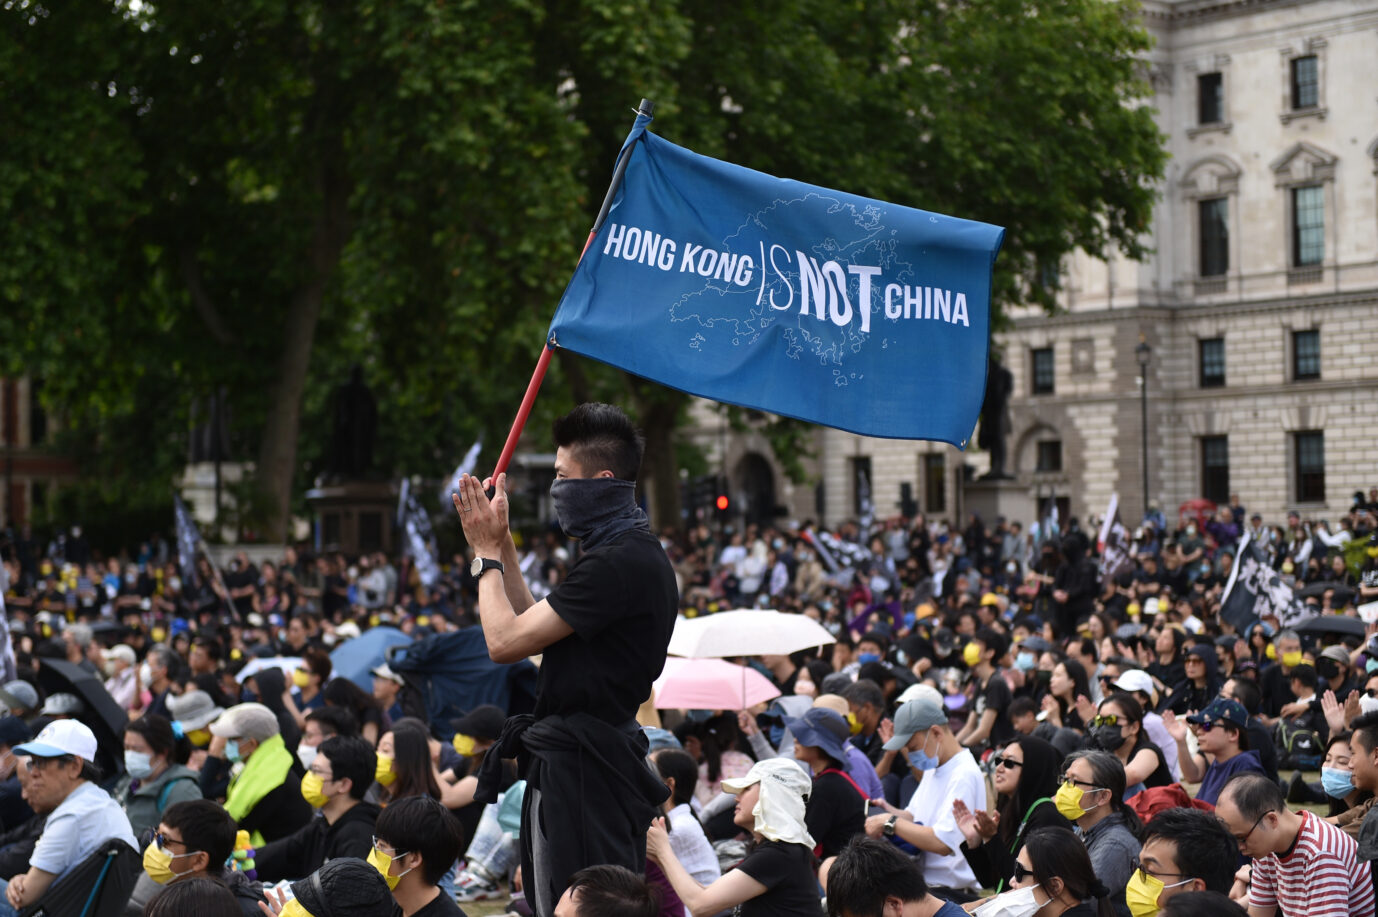 Auf dem Foto befindet sich eine Großdemonstration gegen die chinesische Hongkongpolitik in London. Auf einem großen blauen Transparent steht „Hongkong ist nicht China“. (Themenbild)